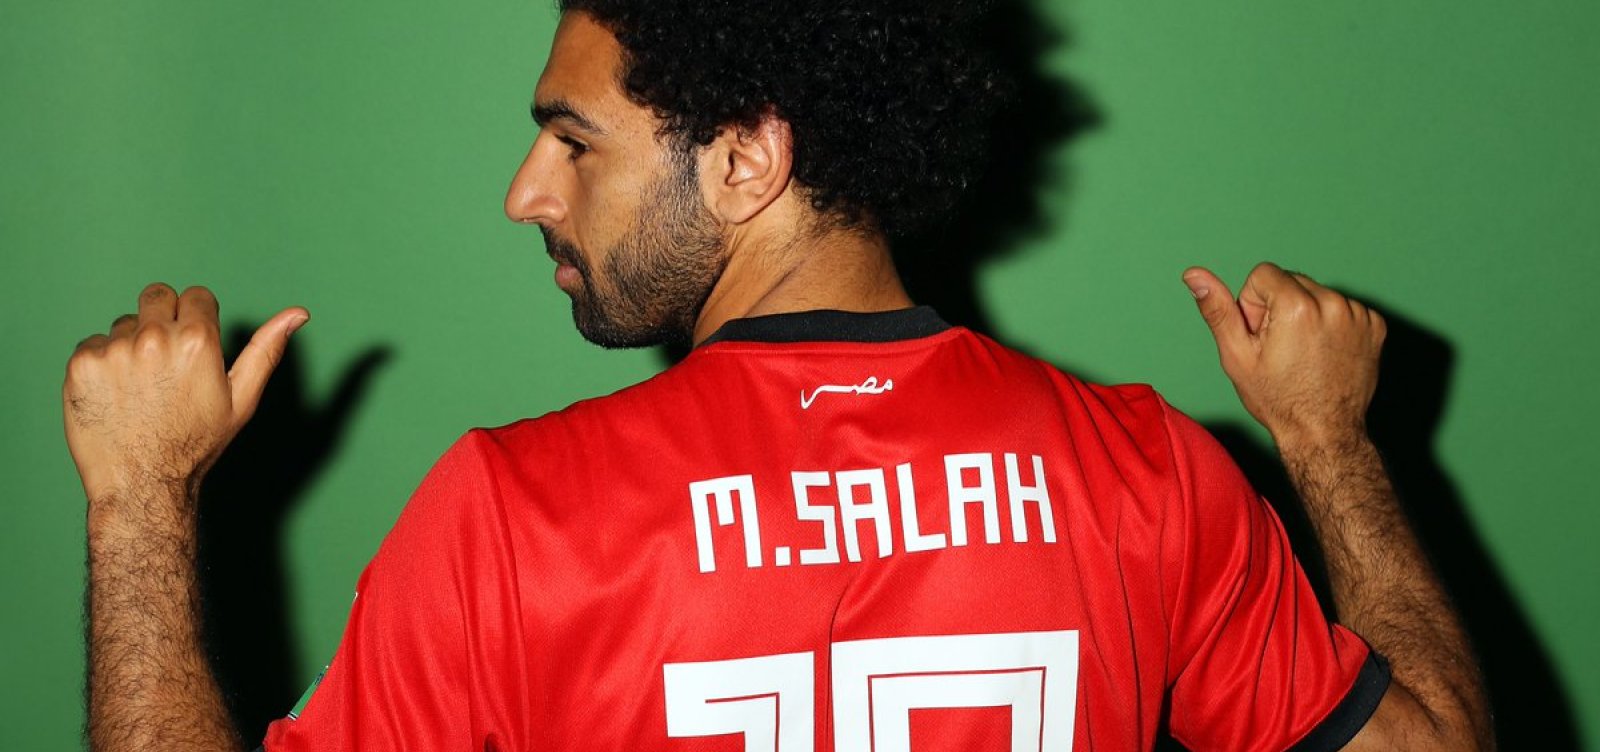 Colombiano preparou Salah para estar entre os melhores do mundo -  24/12/2021 - Esporte - Folha